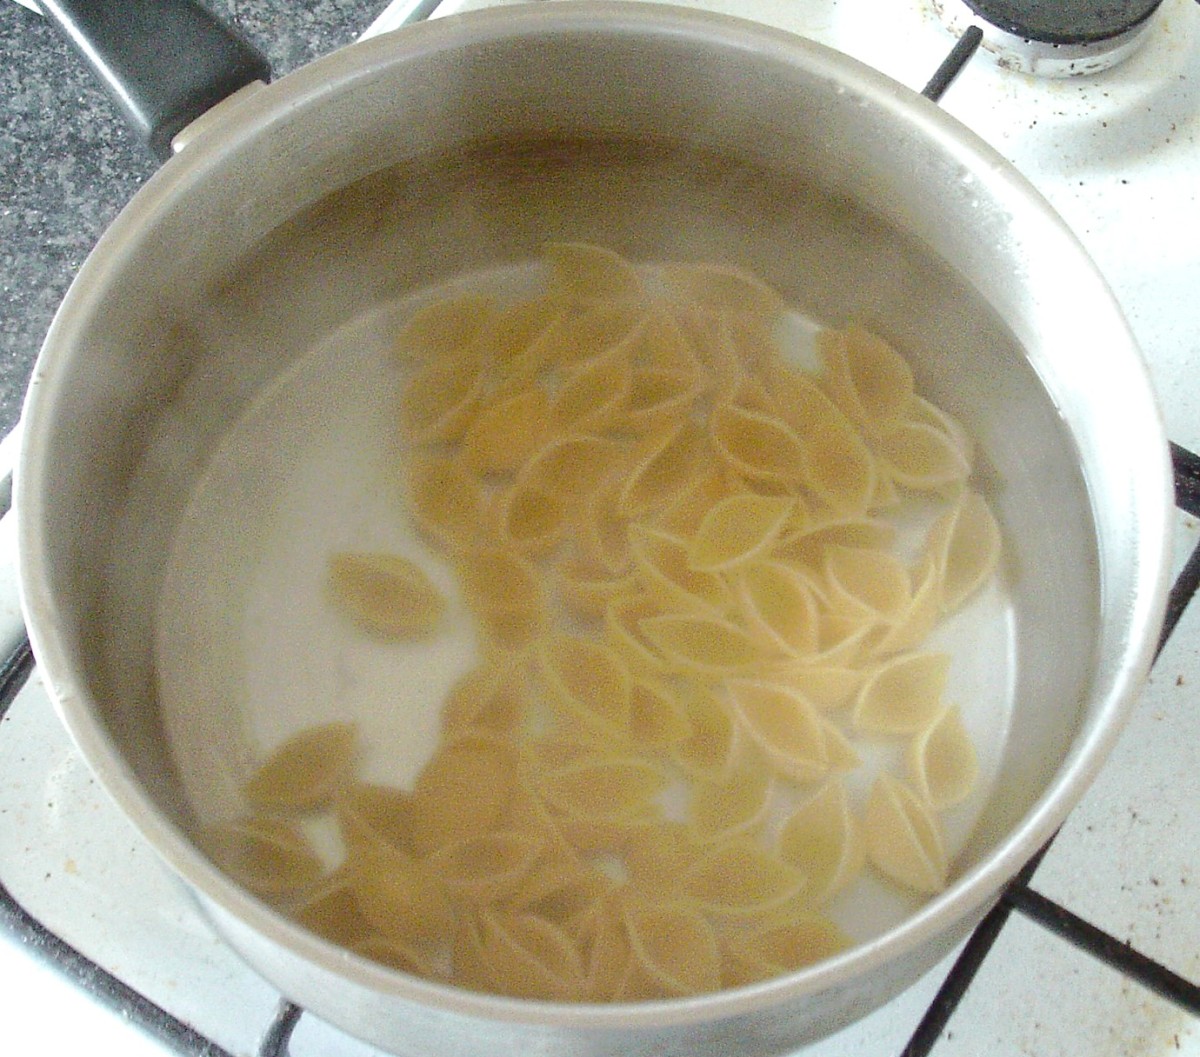 Cook the conchiglie pasta.